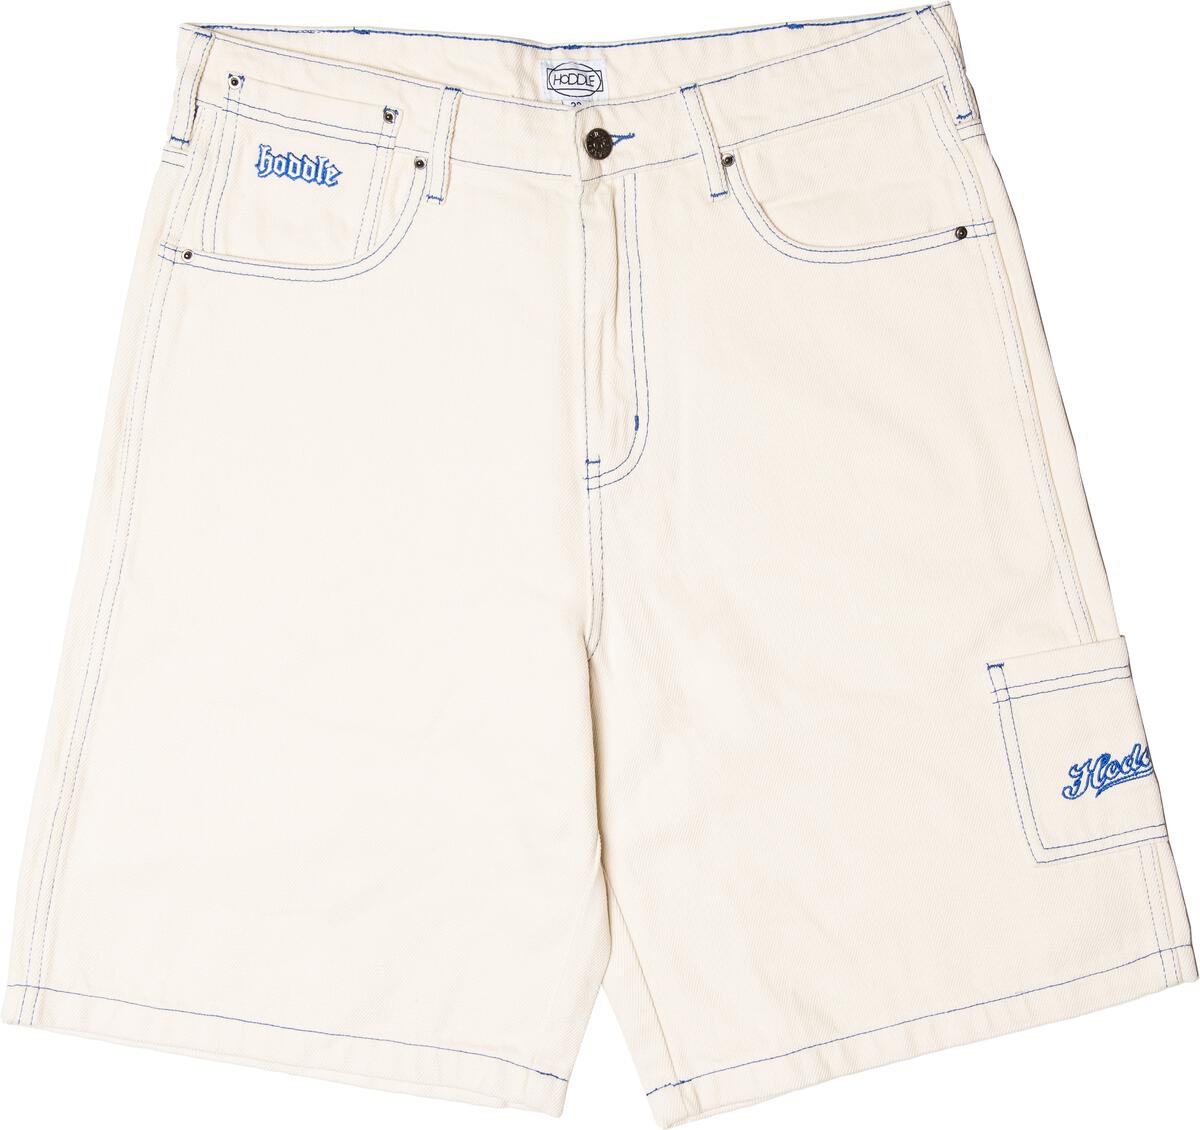 16oz Denim Ranger Shorts (White Wash)